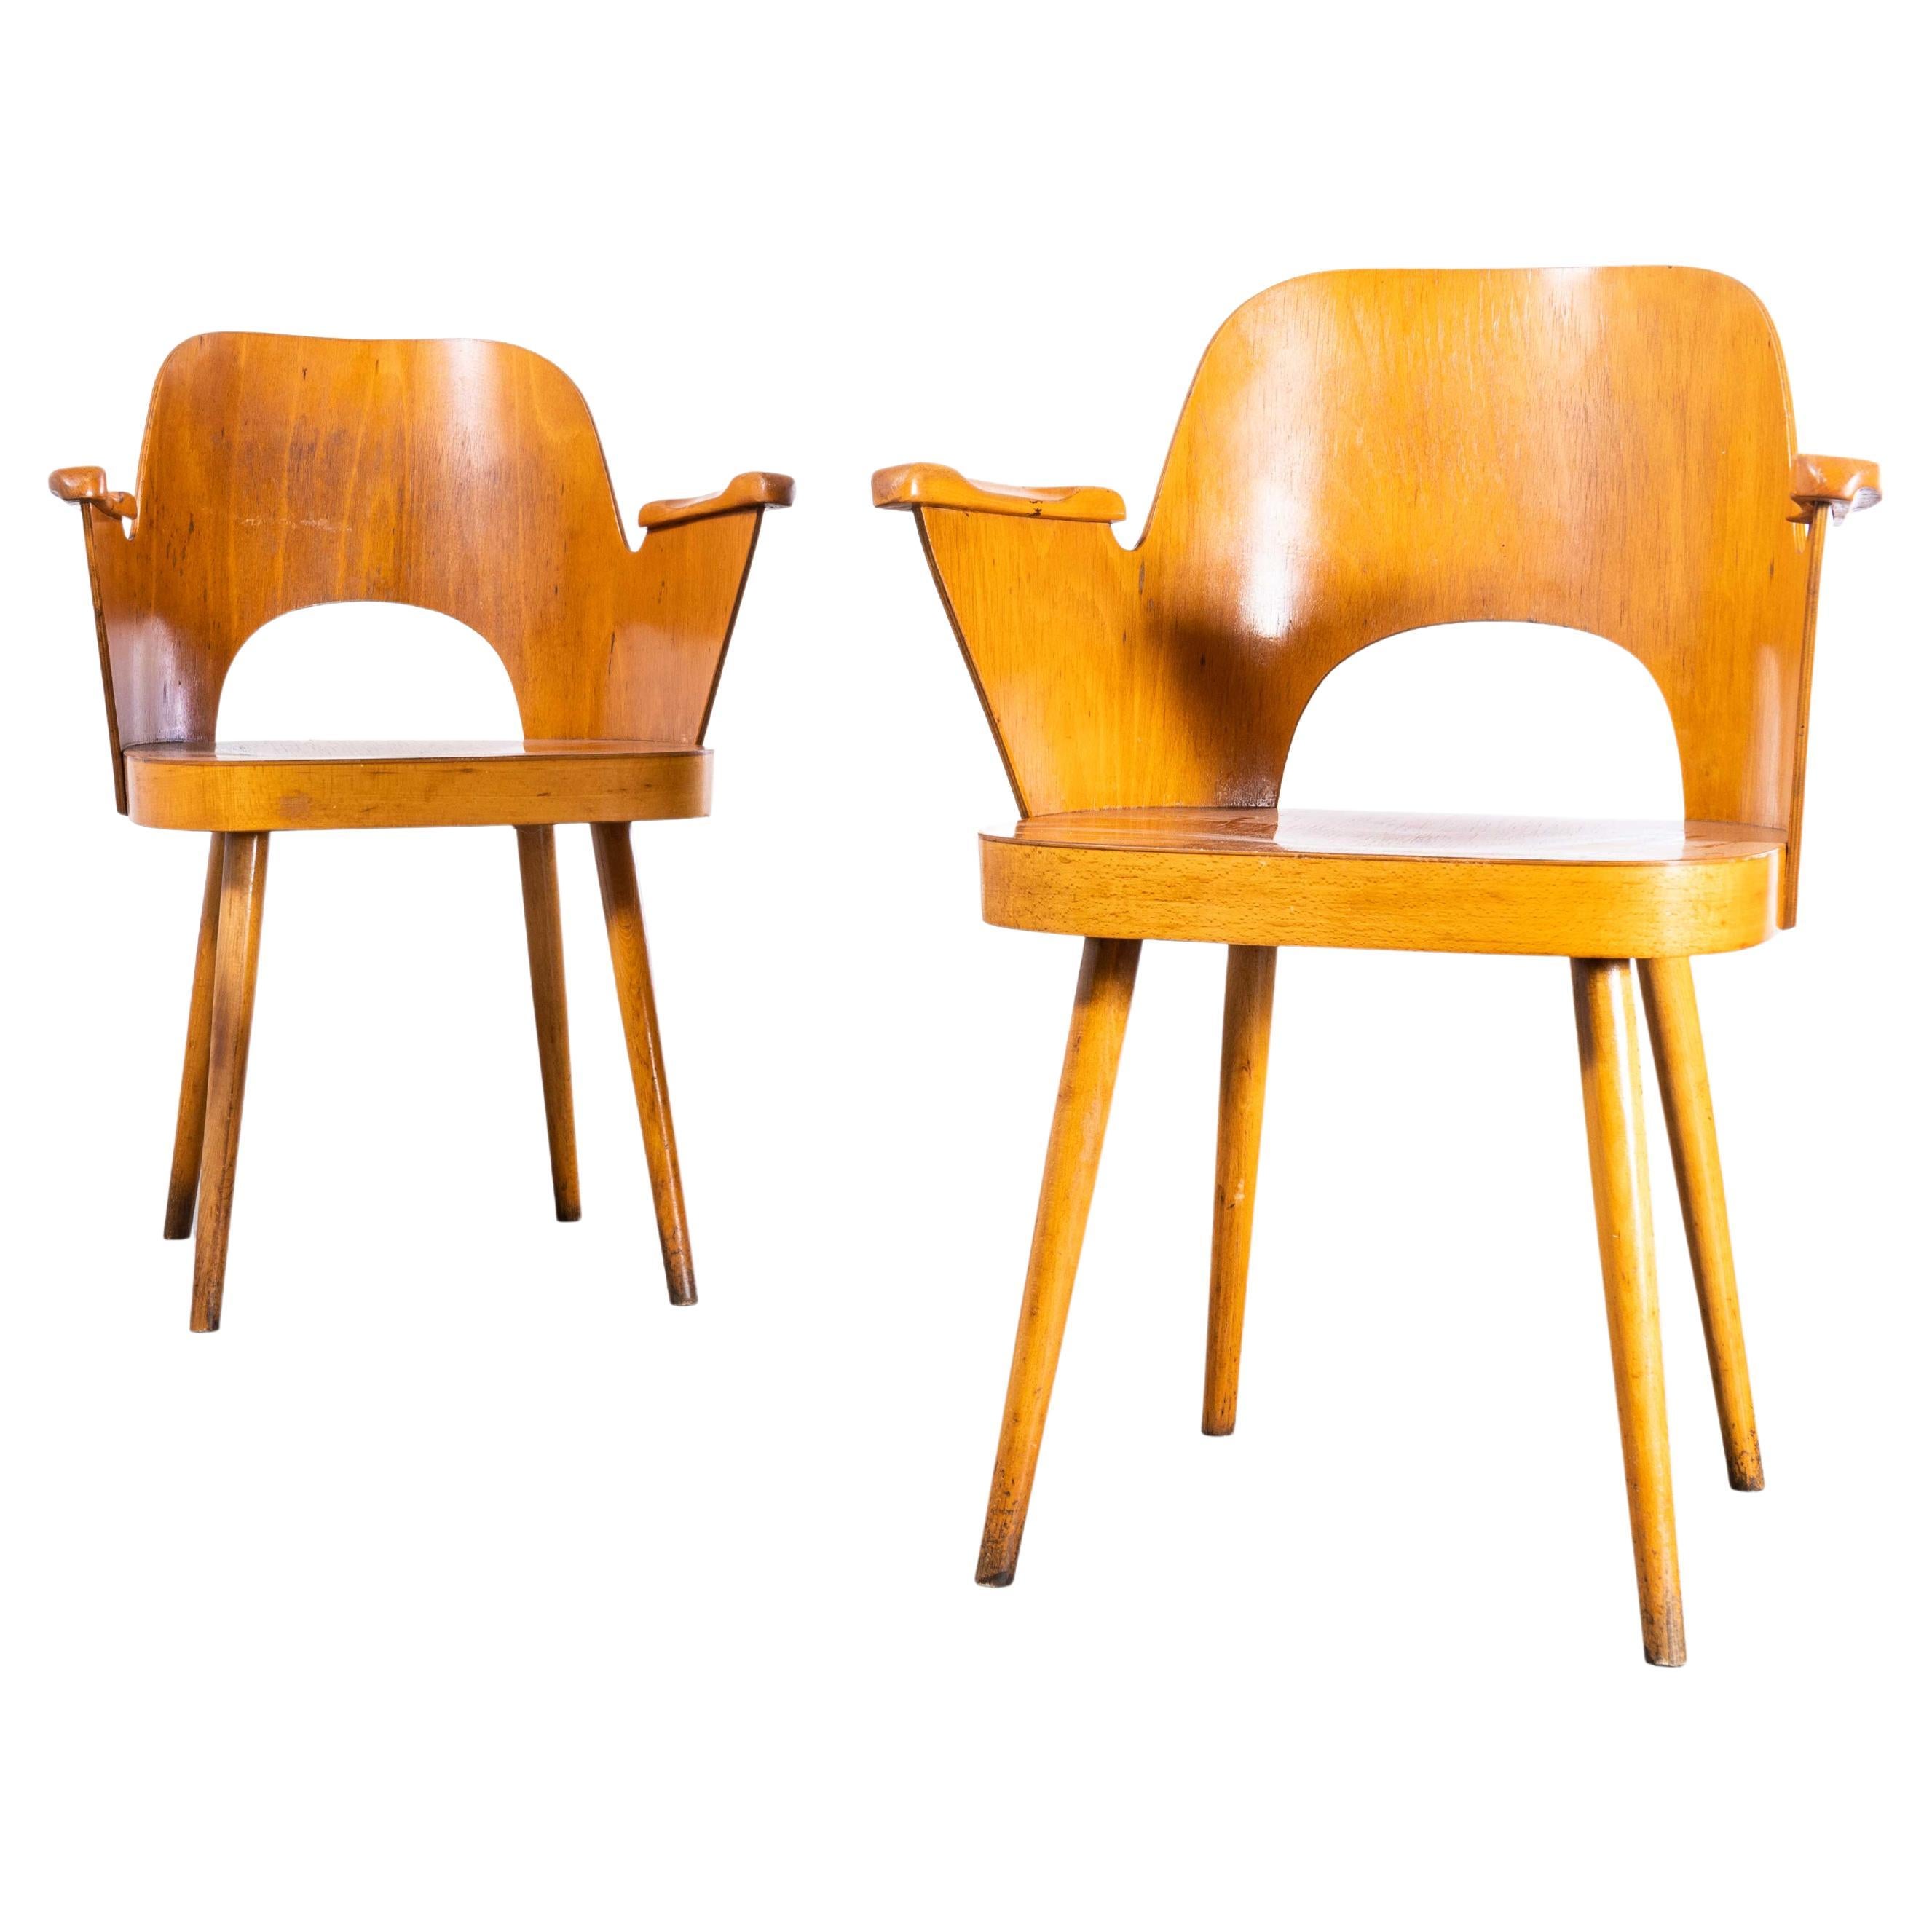 Sessel aus honigfarbener Buche aus den 1950er Jahren – Oswald Haerdtl, Modell 515, Paar (2454)